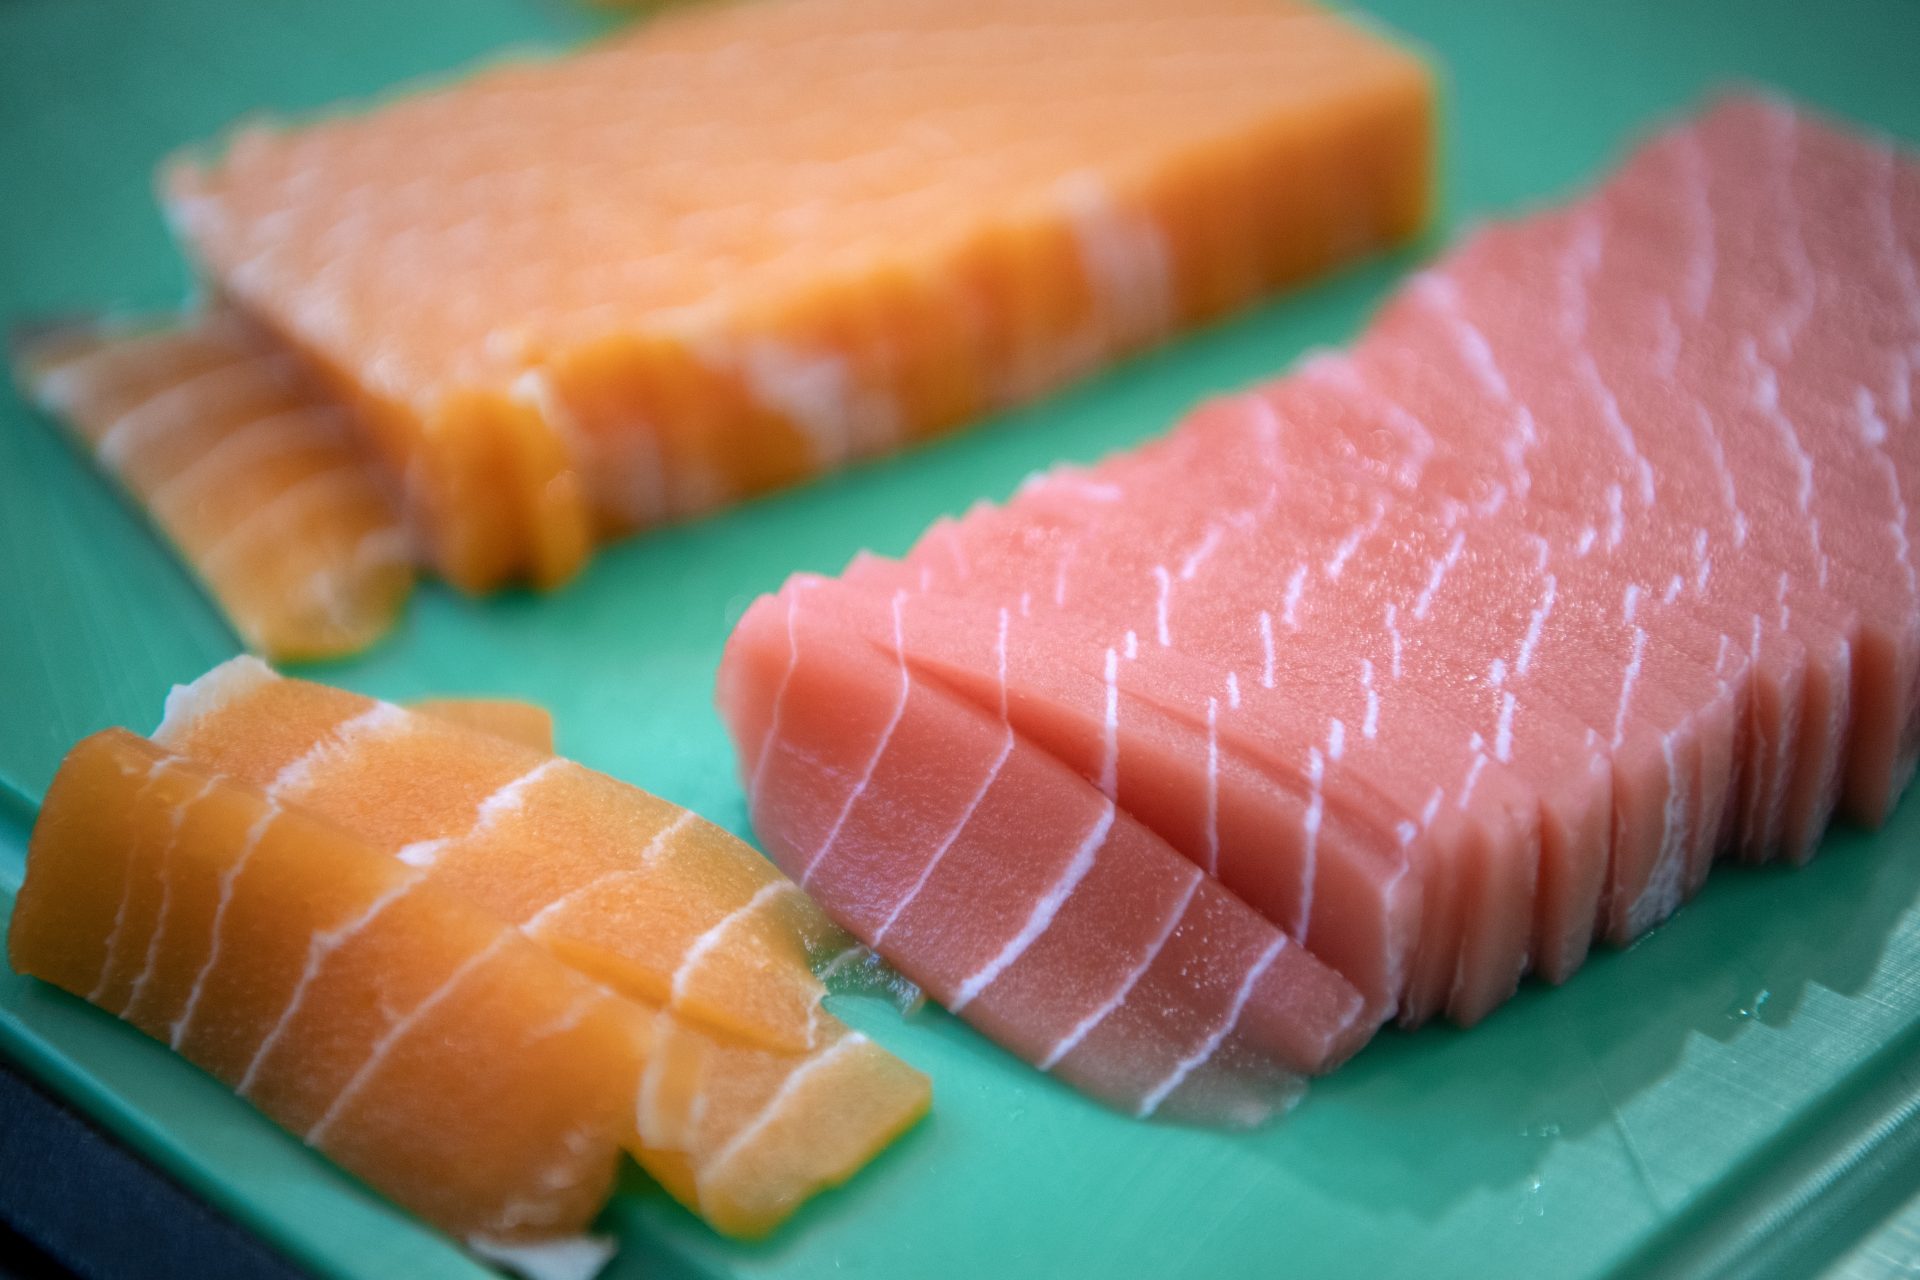 Des alternatives végétaliennes aux fruits de mer font leur apparition : seriez-vous tentés de les goûter ?